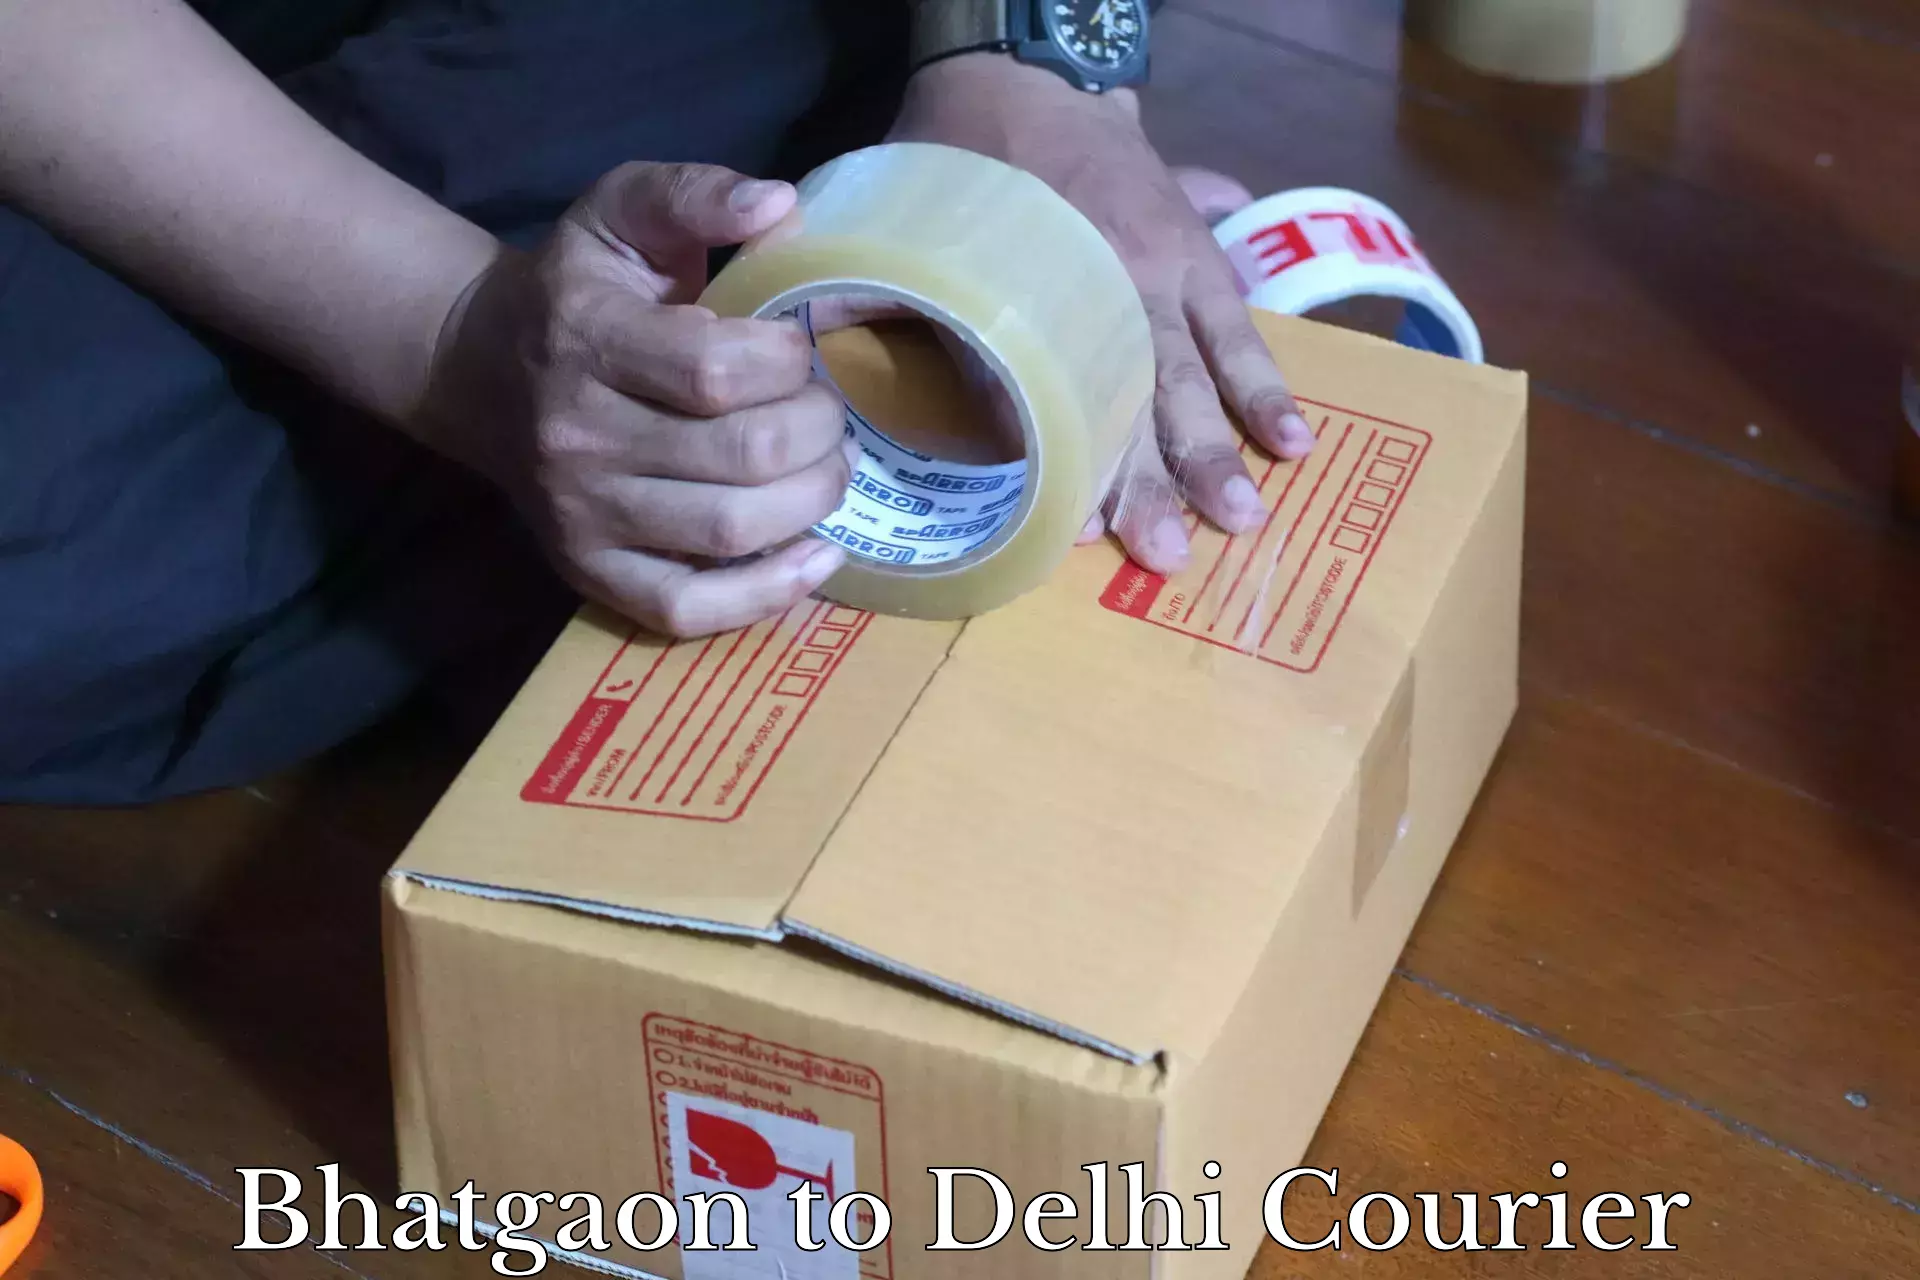 Urban courier service Bhatgaon to Jamia Millia Islamia New Delhi